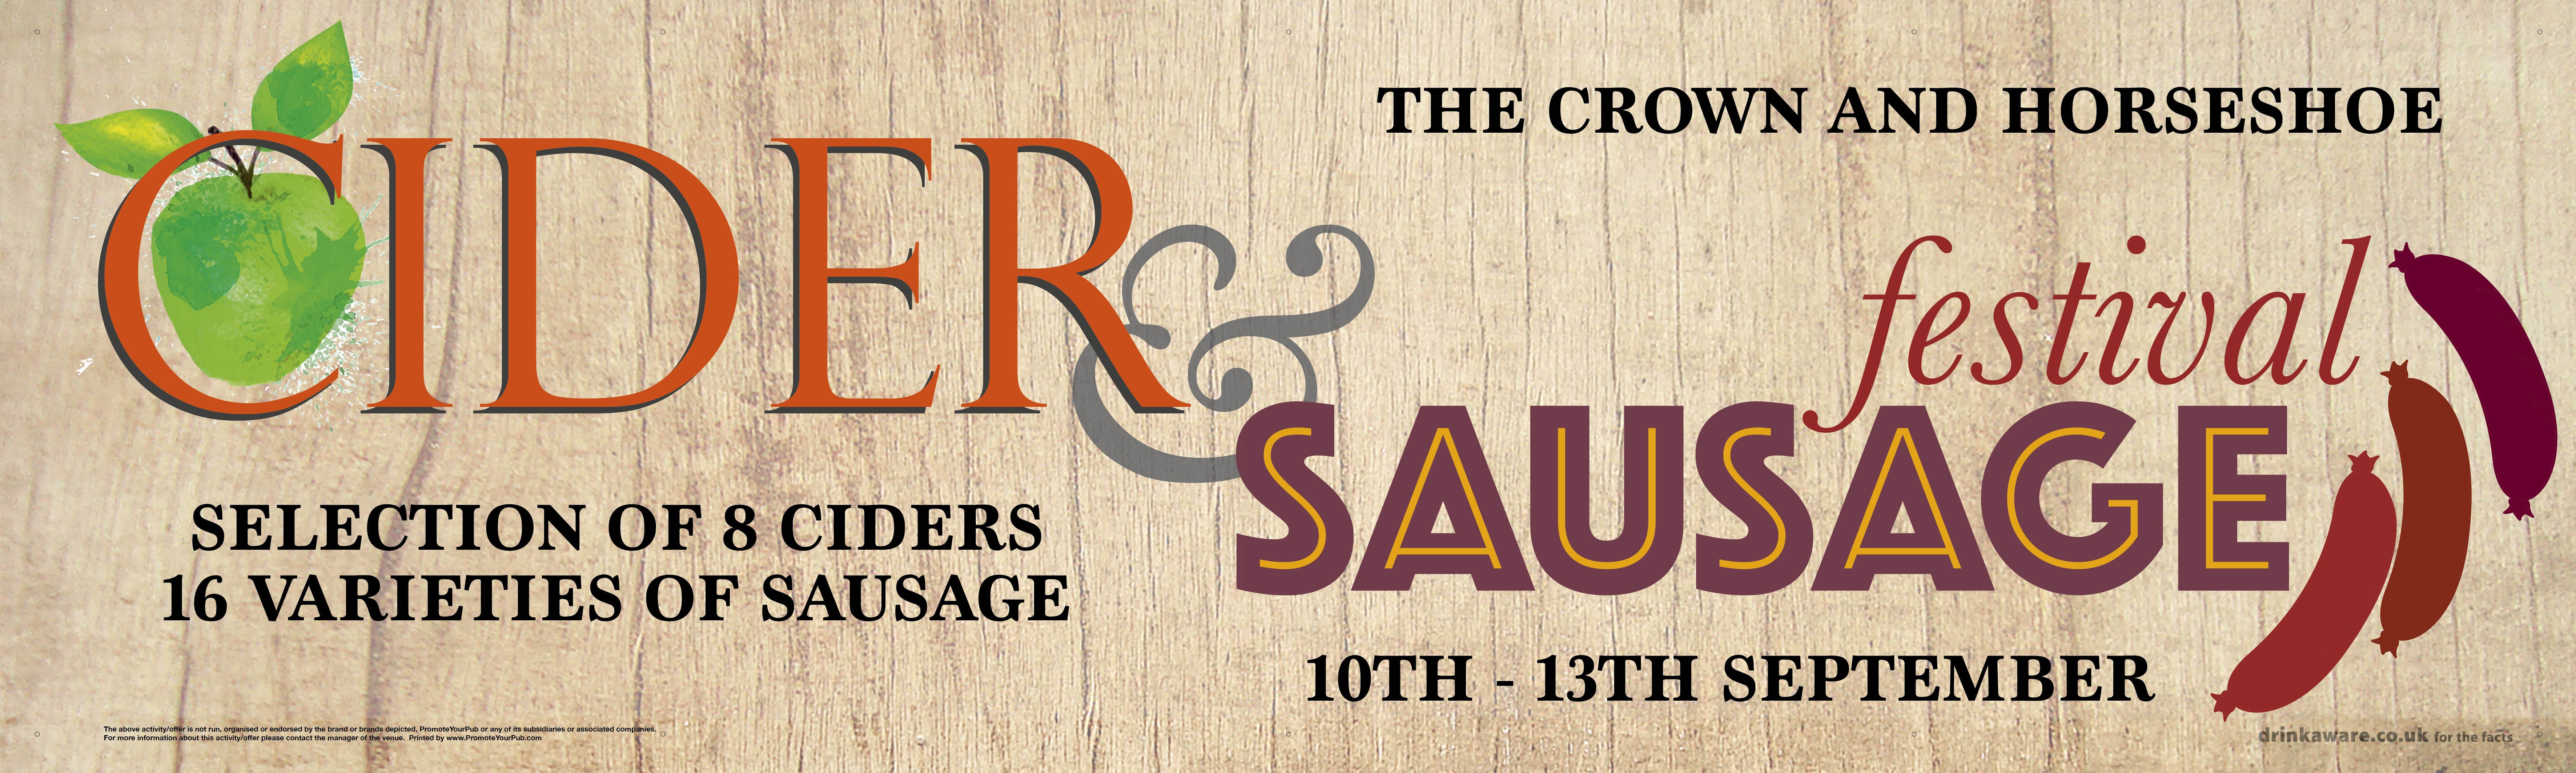 Cider and Sausage Festival Banner (Lrg)